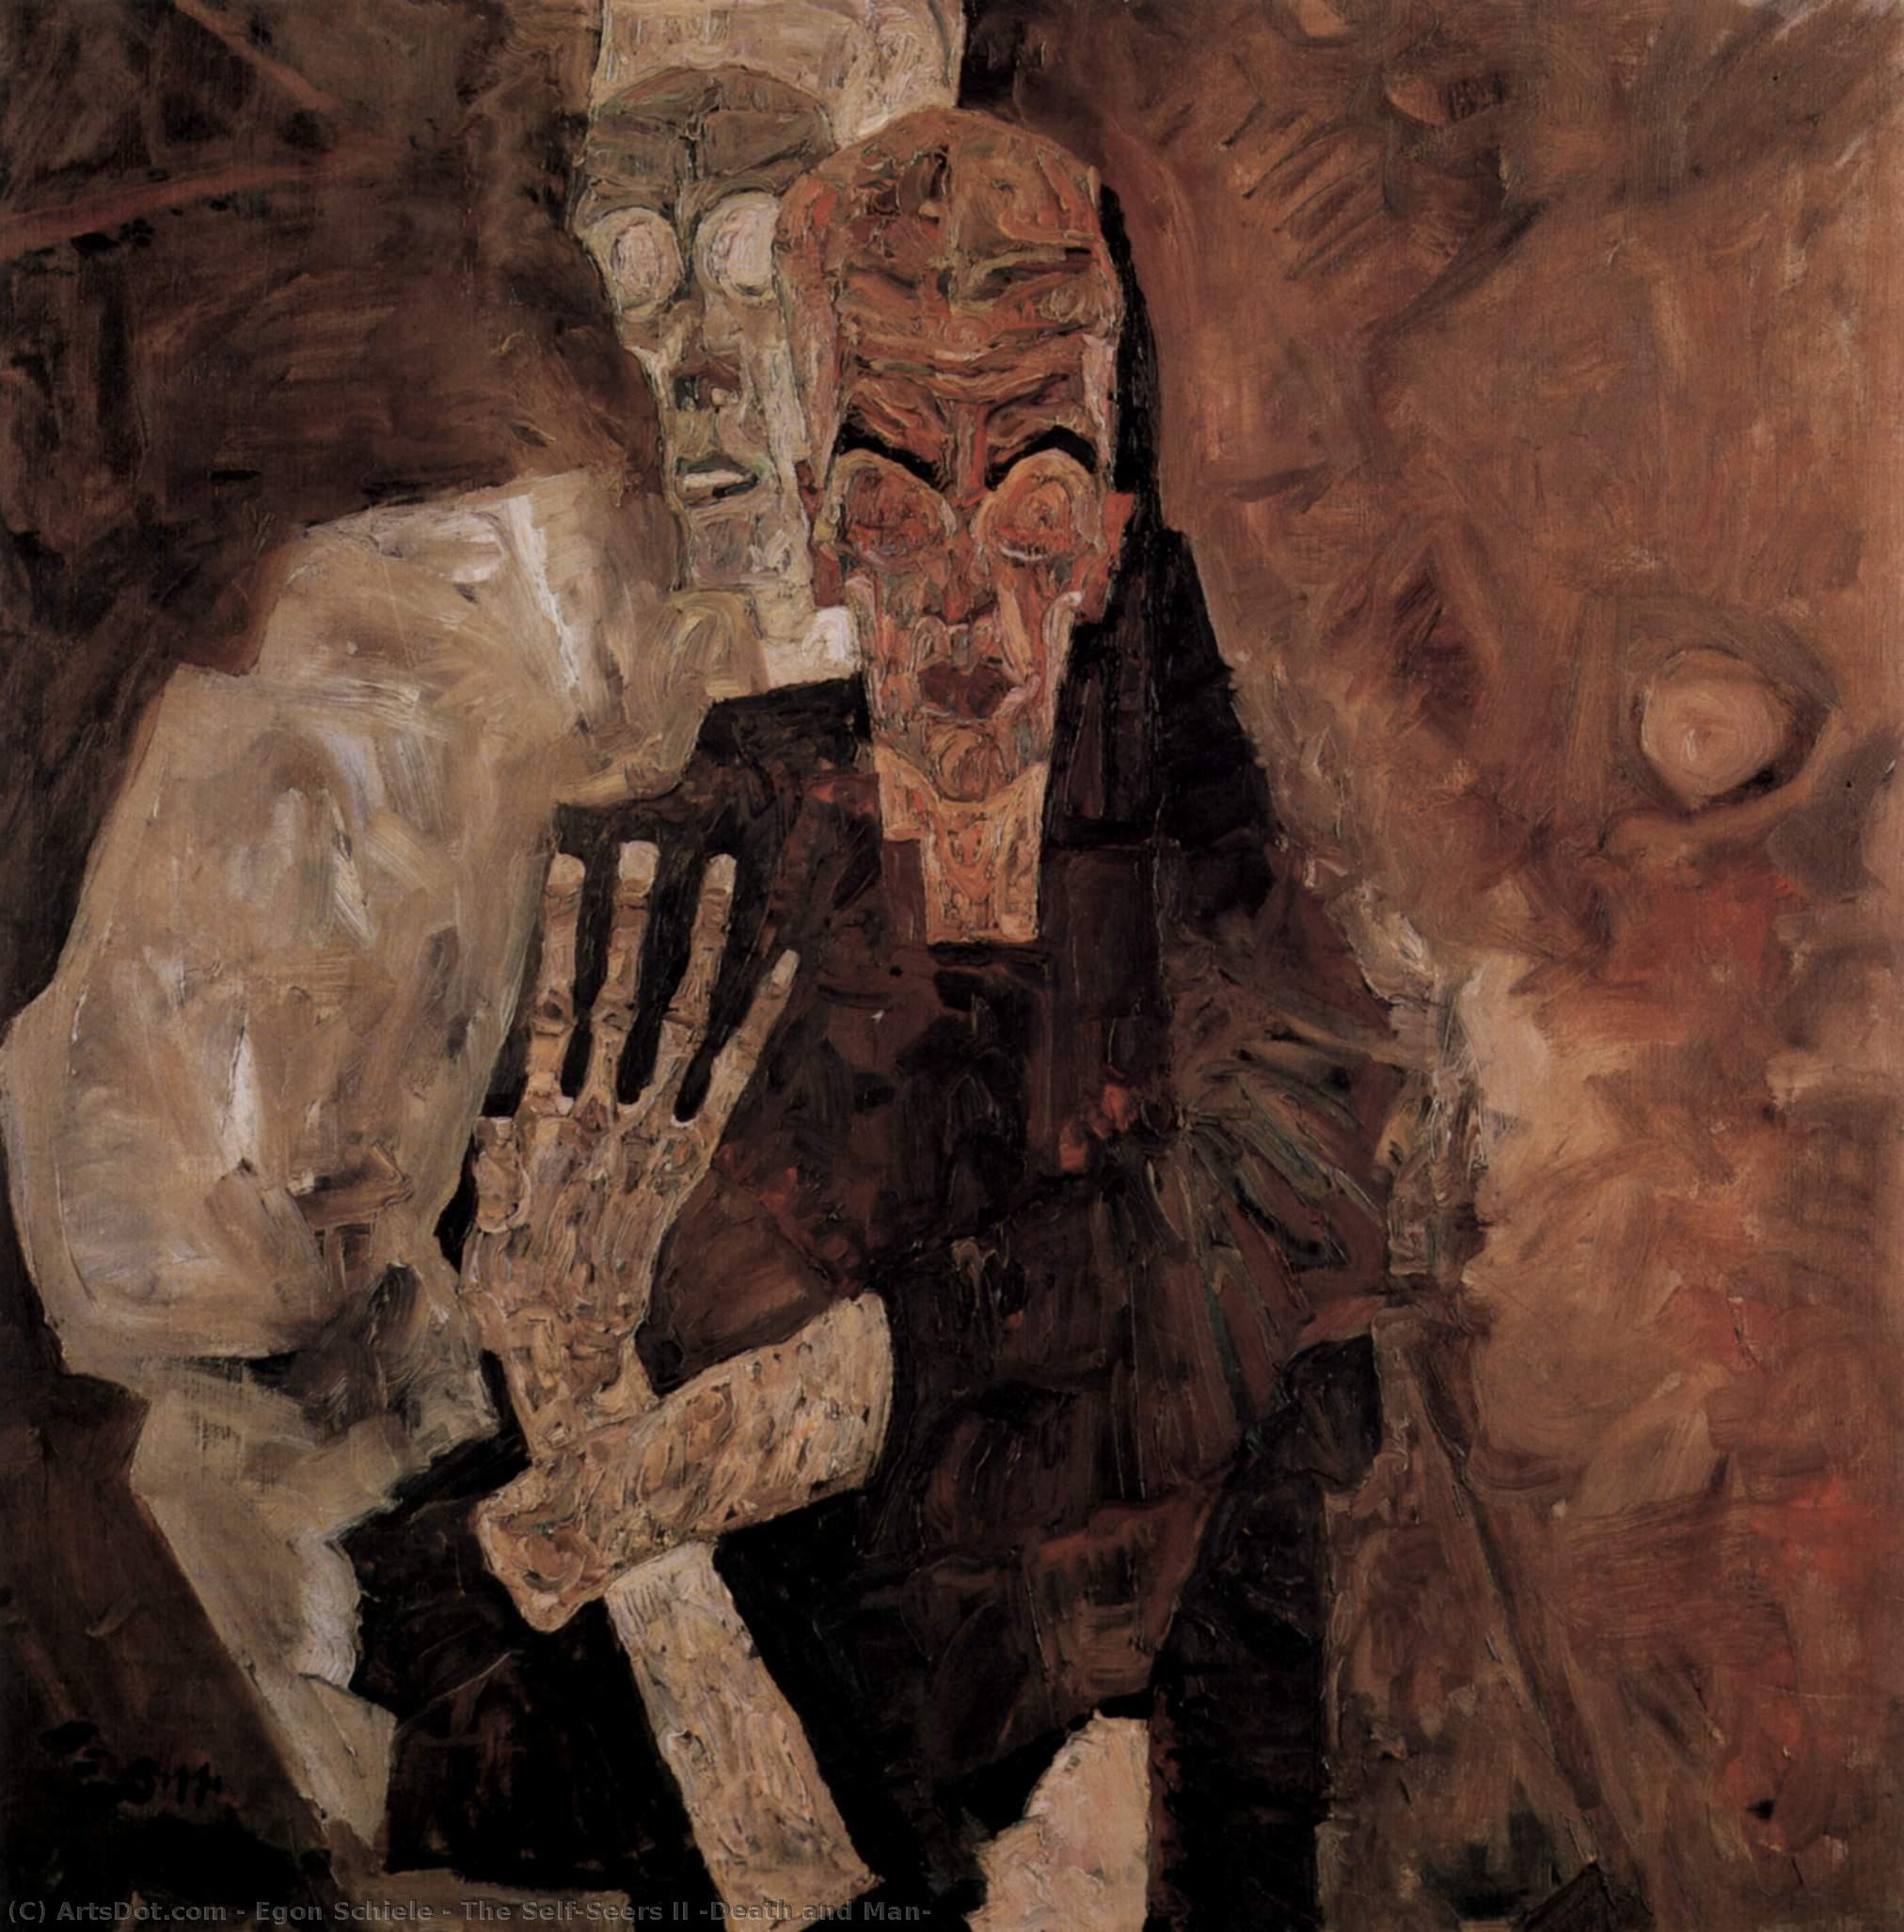 Comprar Reproducciones De Arte Del Museo Los Autoseguidos II (Muerte y Hombre), 1911 de Egon Schiele (1890-1918, Croatia) | ArtsDot.com